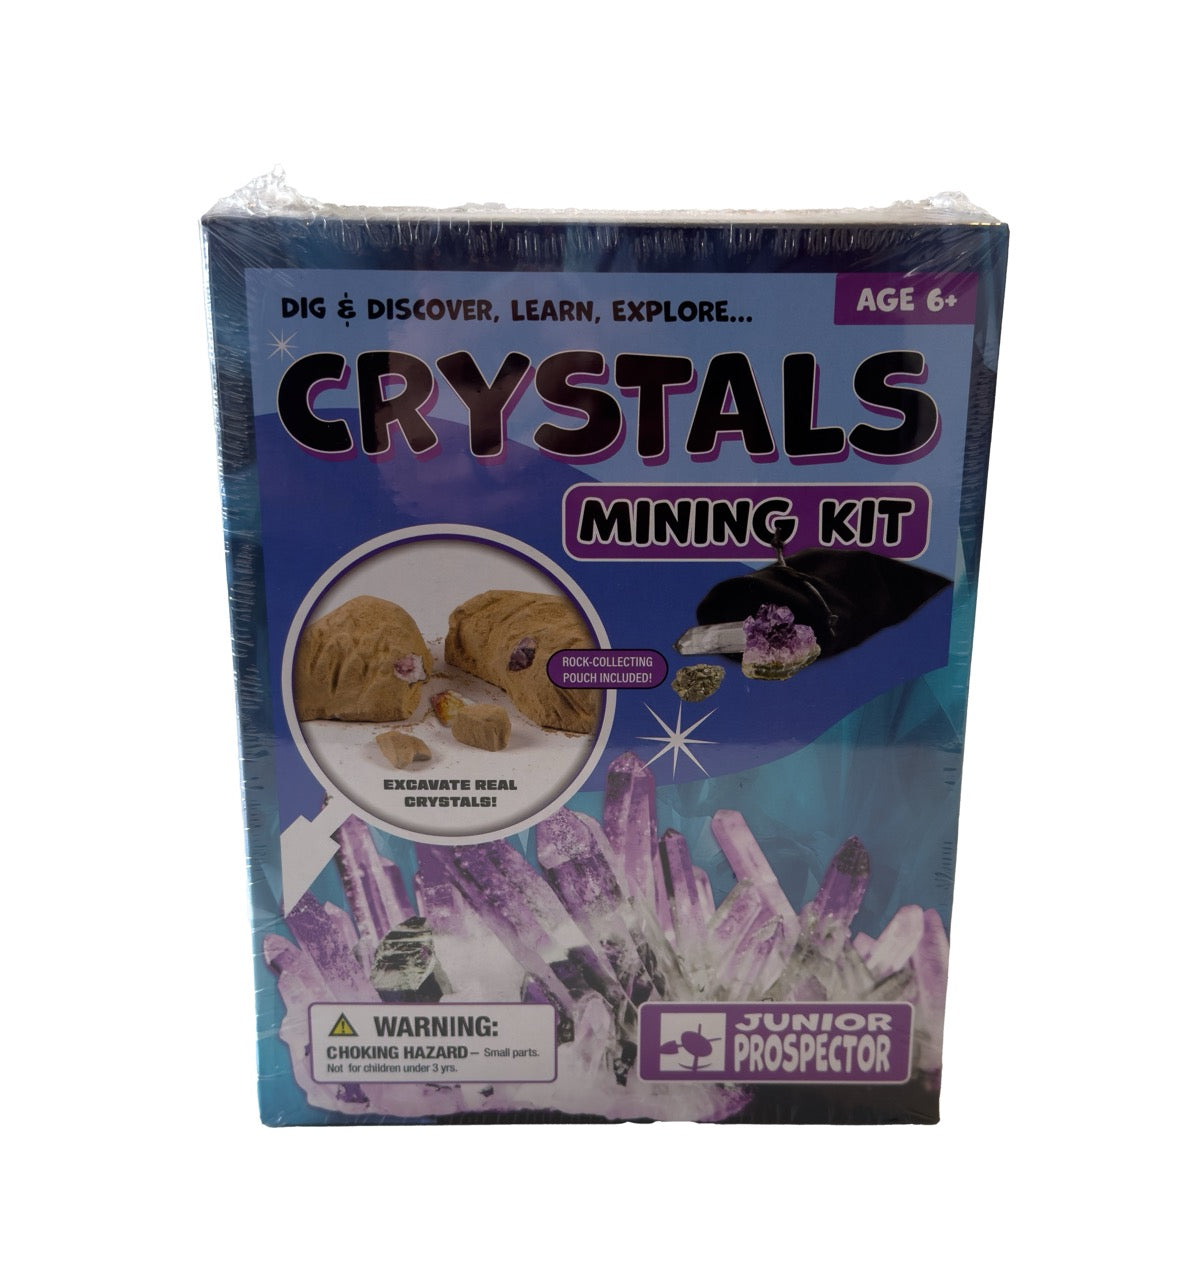 Crystals Mining Kit